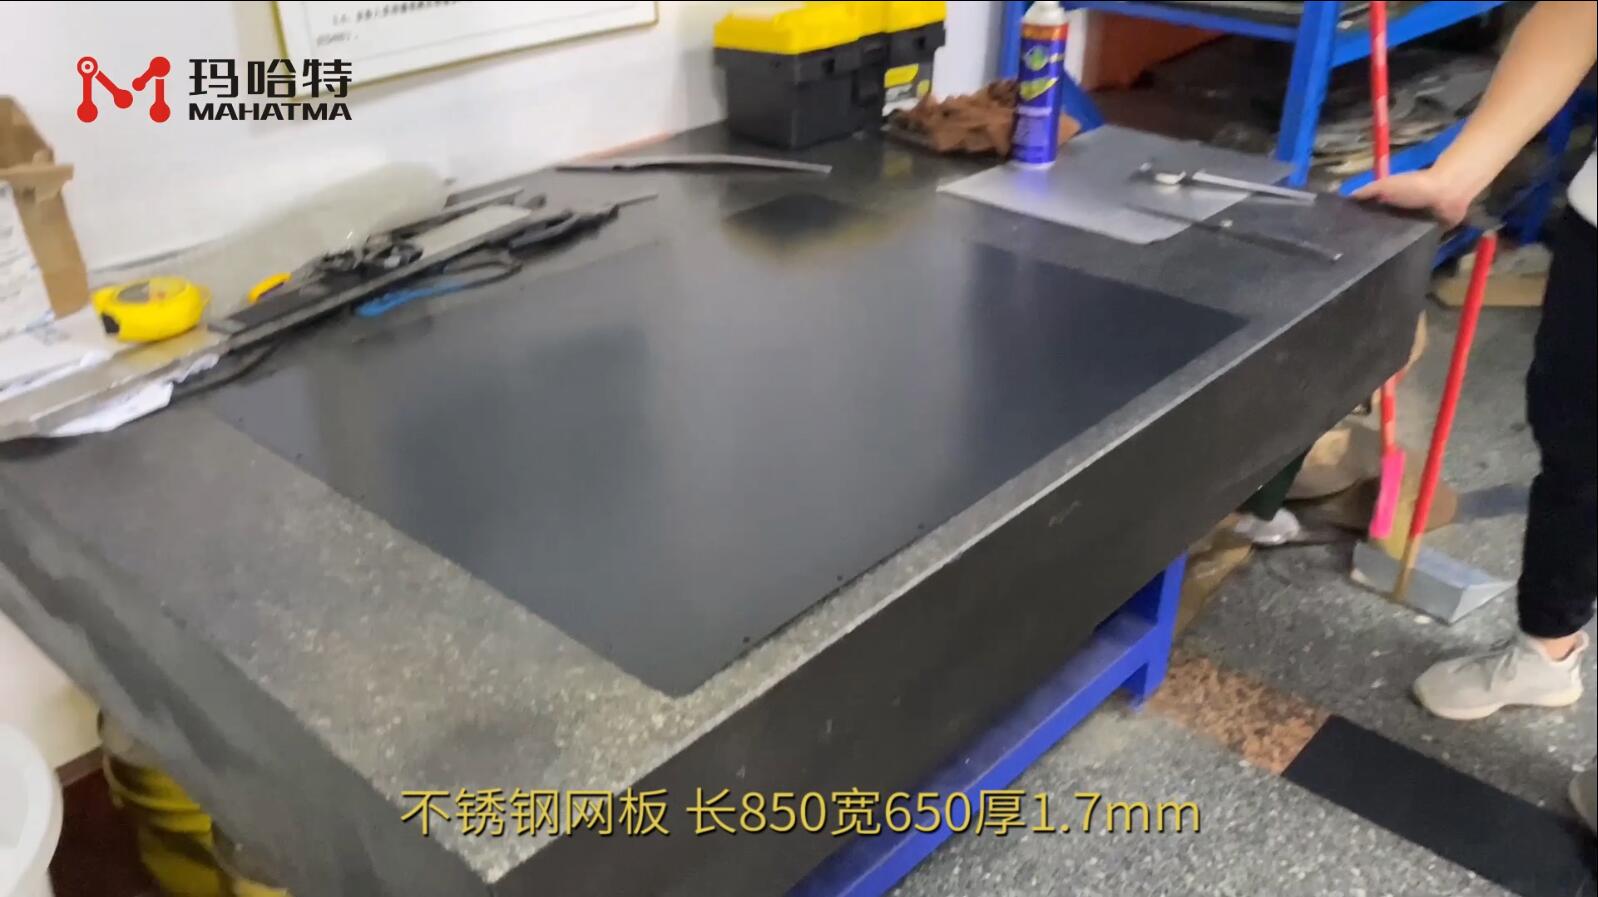 不锈钢网板 MHT50-1300 长方形 长850宽650厚1.7mm